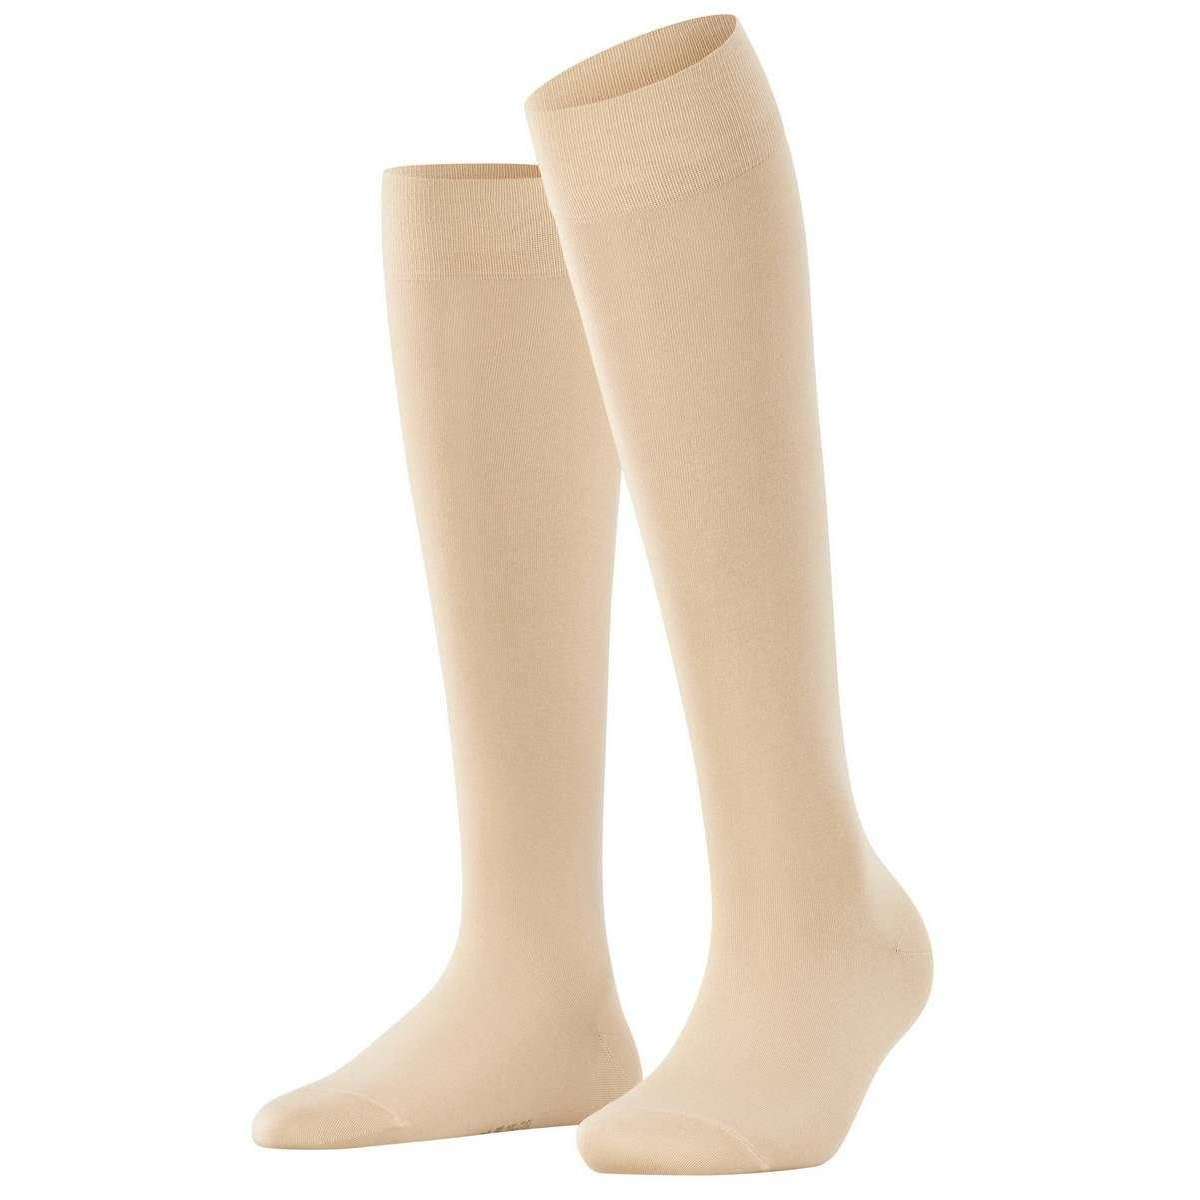 Falke Cotton Touch Knee High Socks - Cream